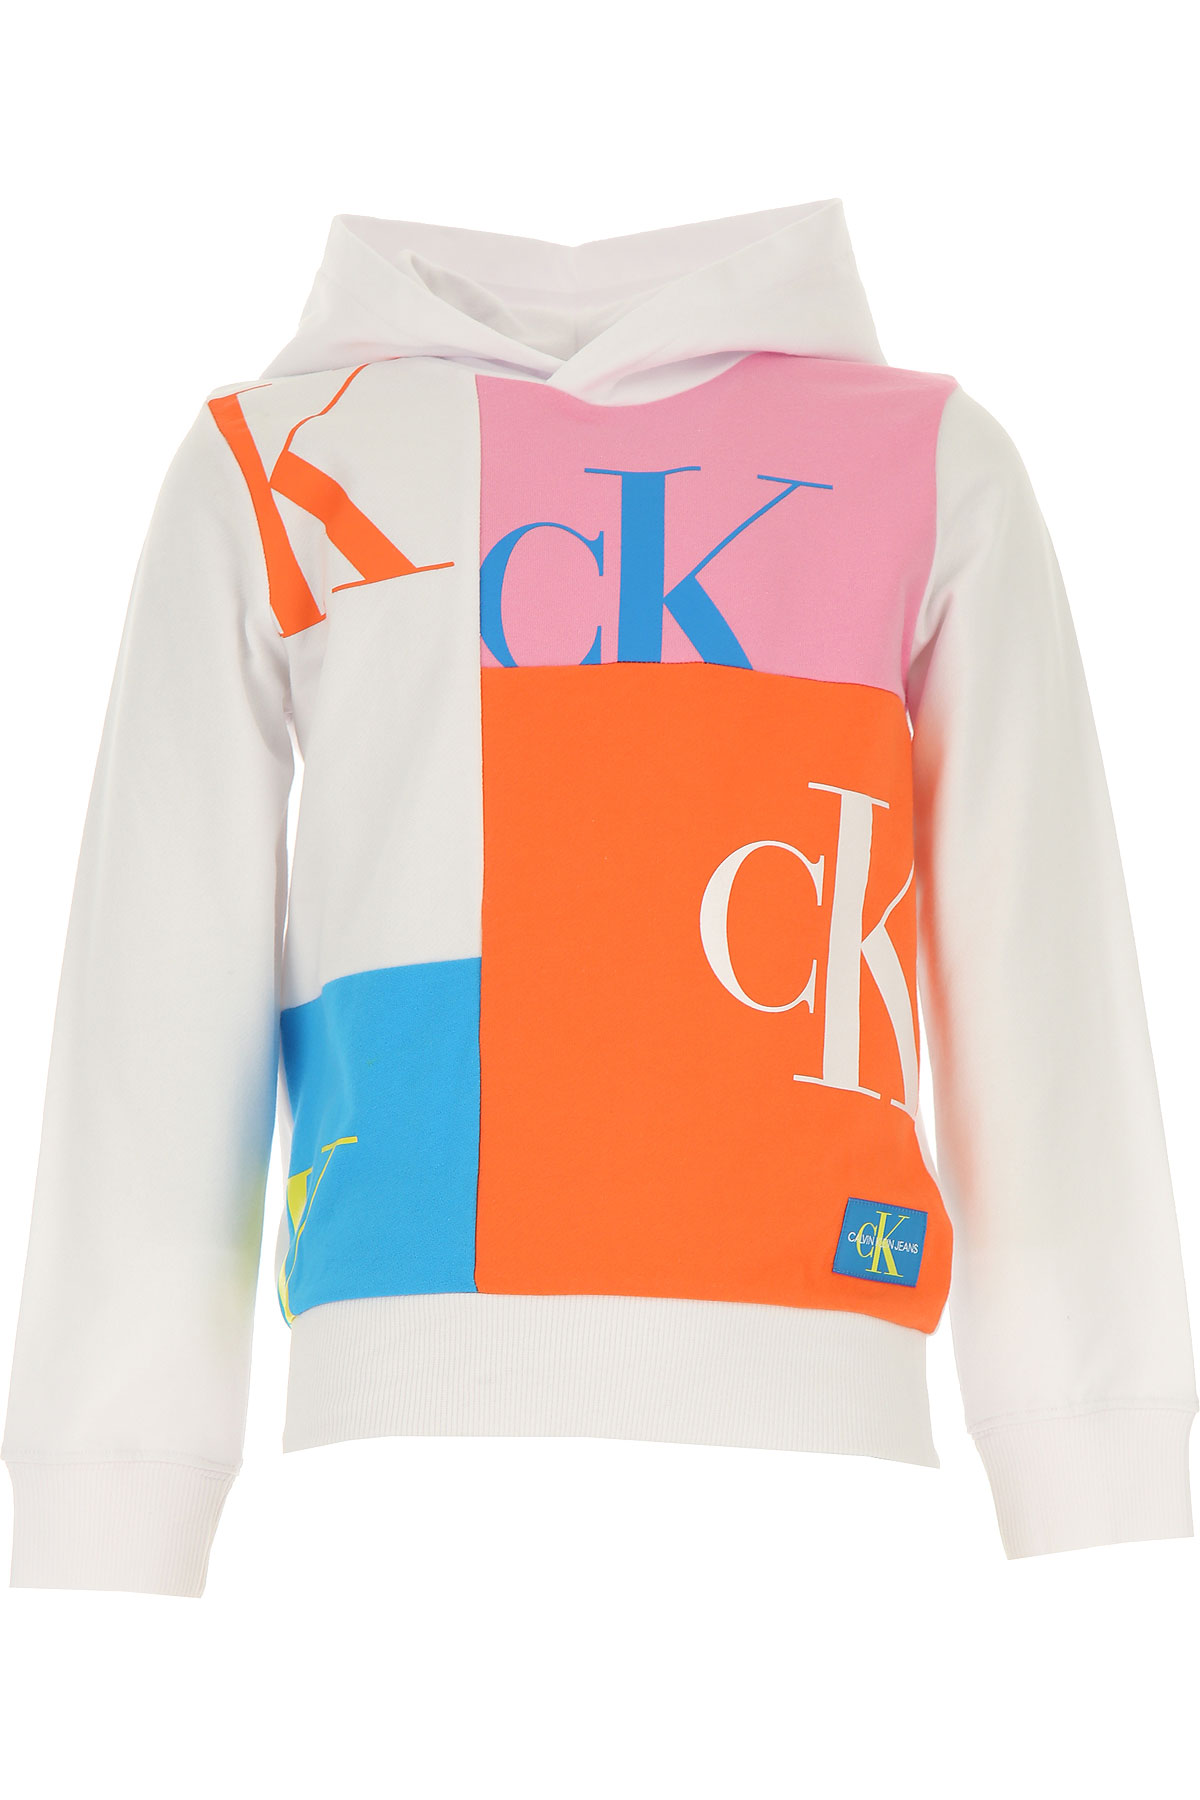 Calvin Klein Kinder Sweatshirt & Kapuzenpullover für Mädchen Günstig im Sale, Weiss, Baumwolle, 2017, 10Y 14Y 16Y 4Y 6Y 8Y